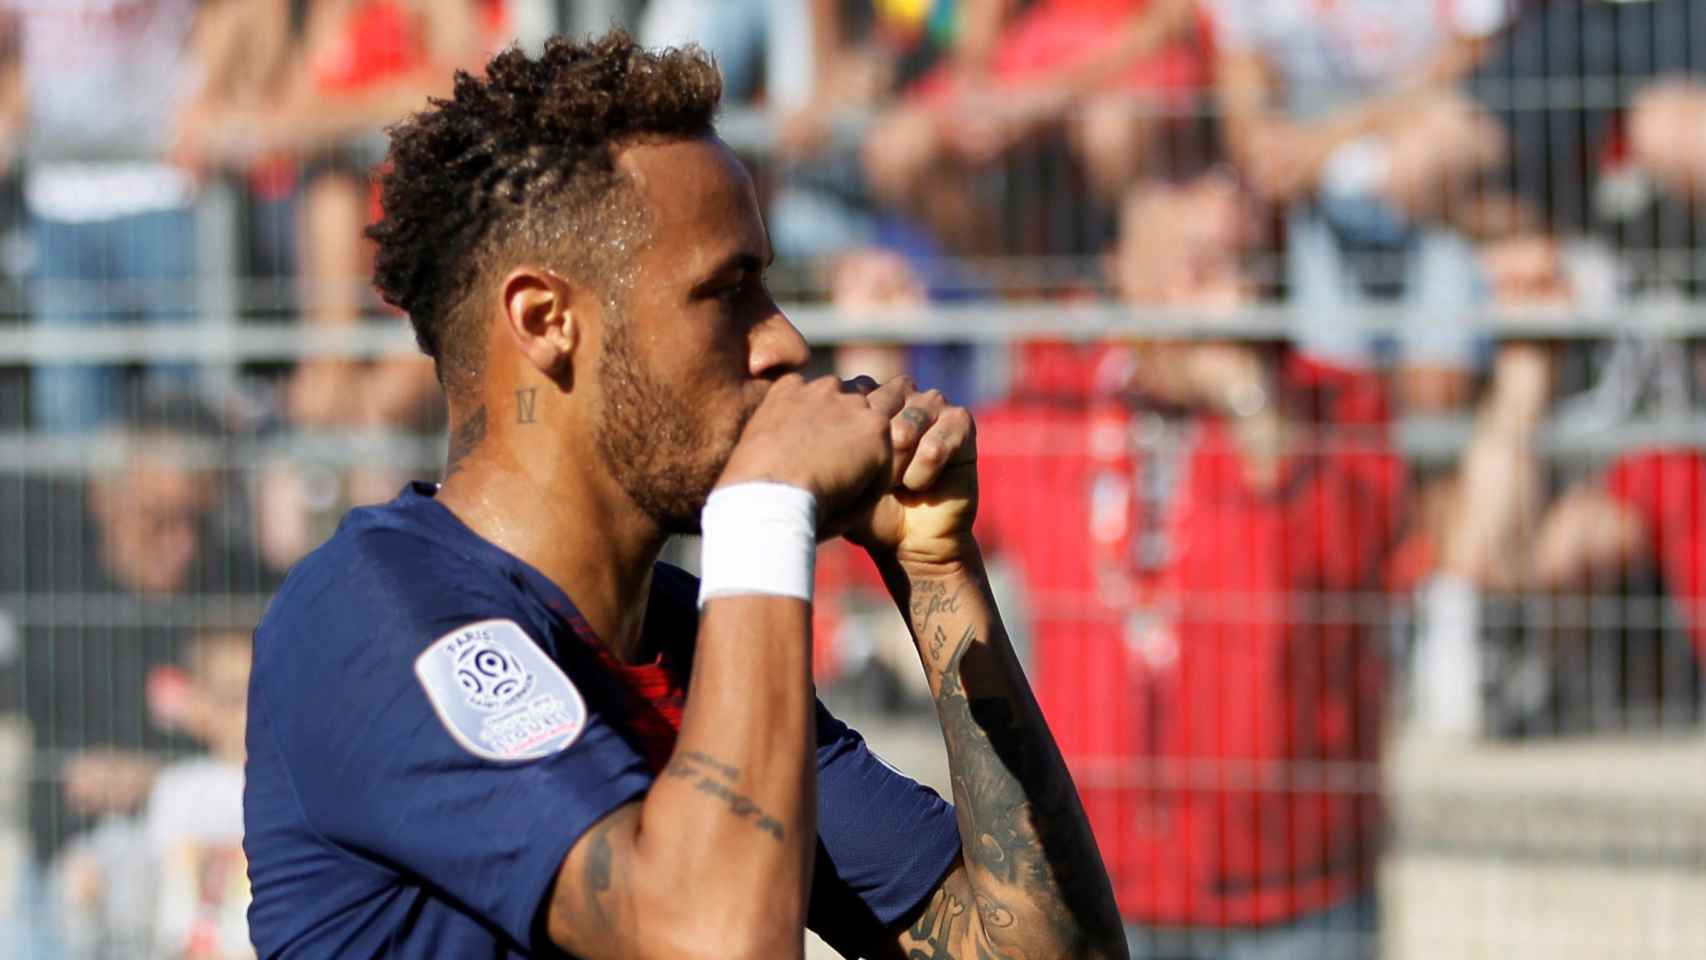 Neymar celebra su gol ante el Nimes Olympique imitando los gestos de burla de los hinchas rivales